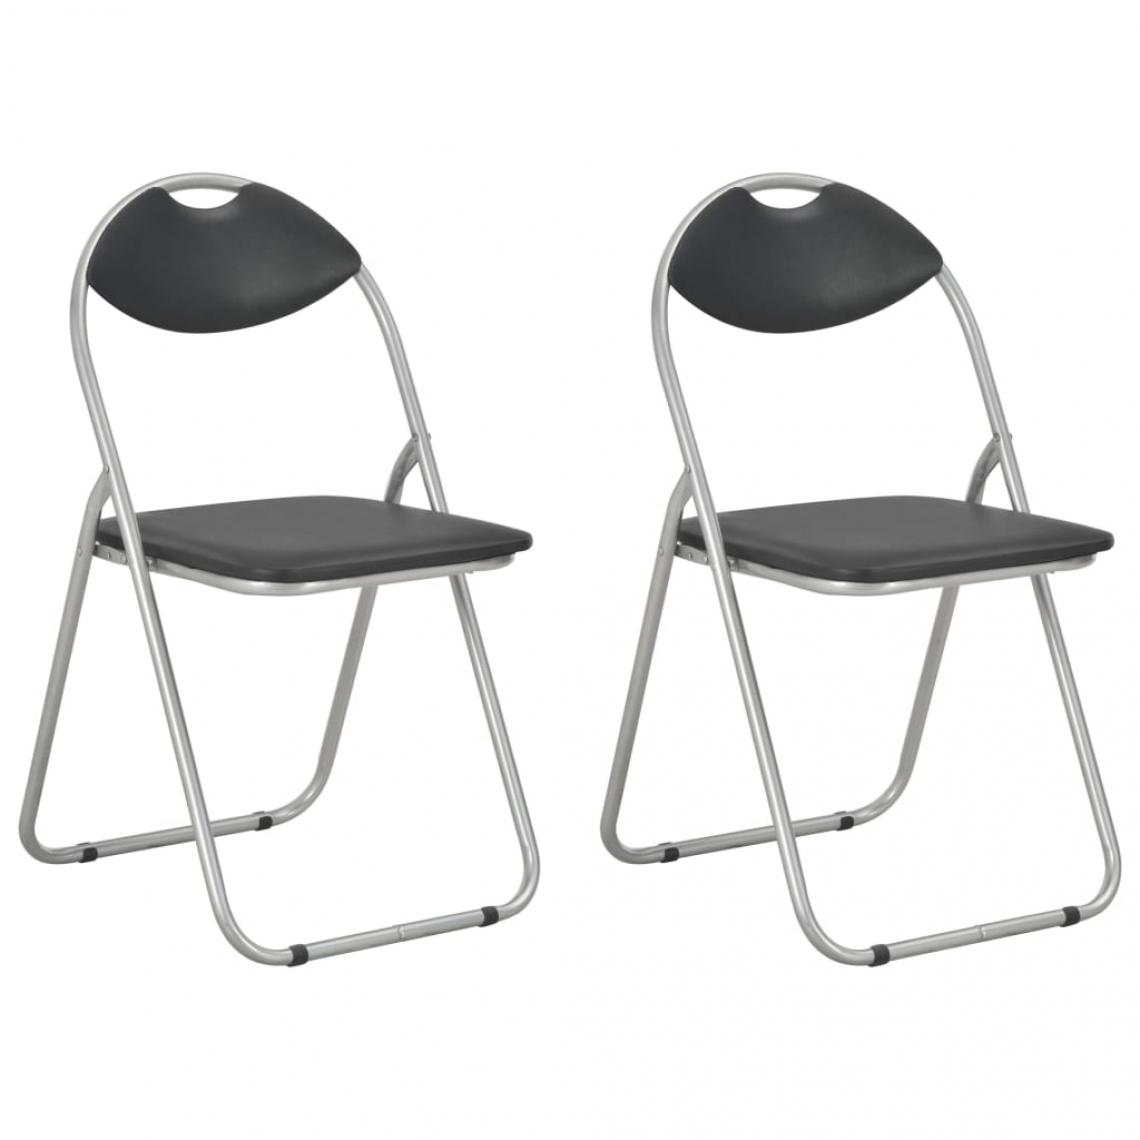 Decoshop26 - Lot de 2 chaises de salle à manger cuisine pliantes design classique similicuir noir CDS020950 - Chaises